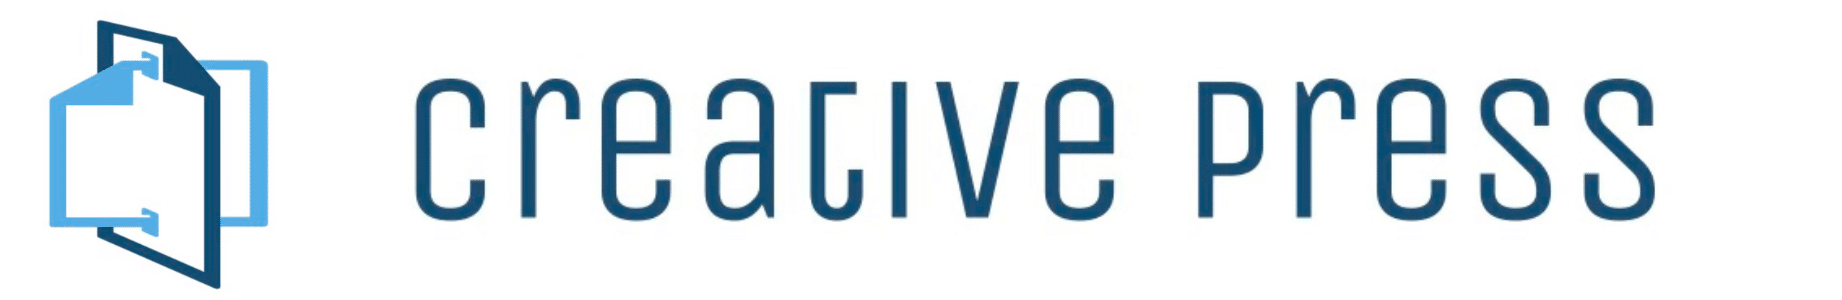 Creative Press NY Logo